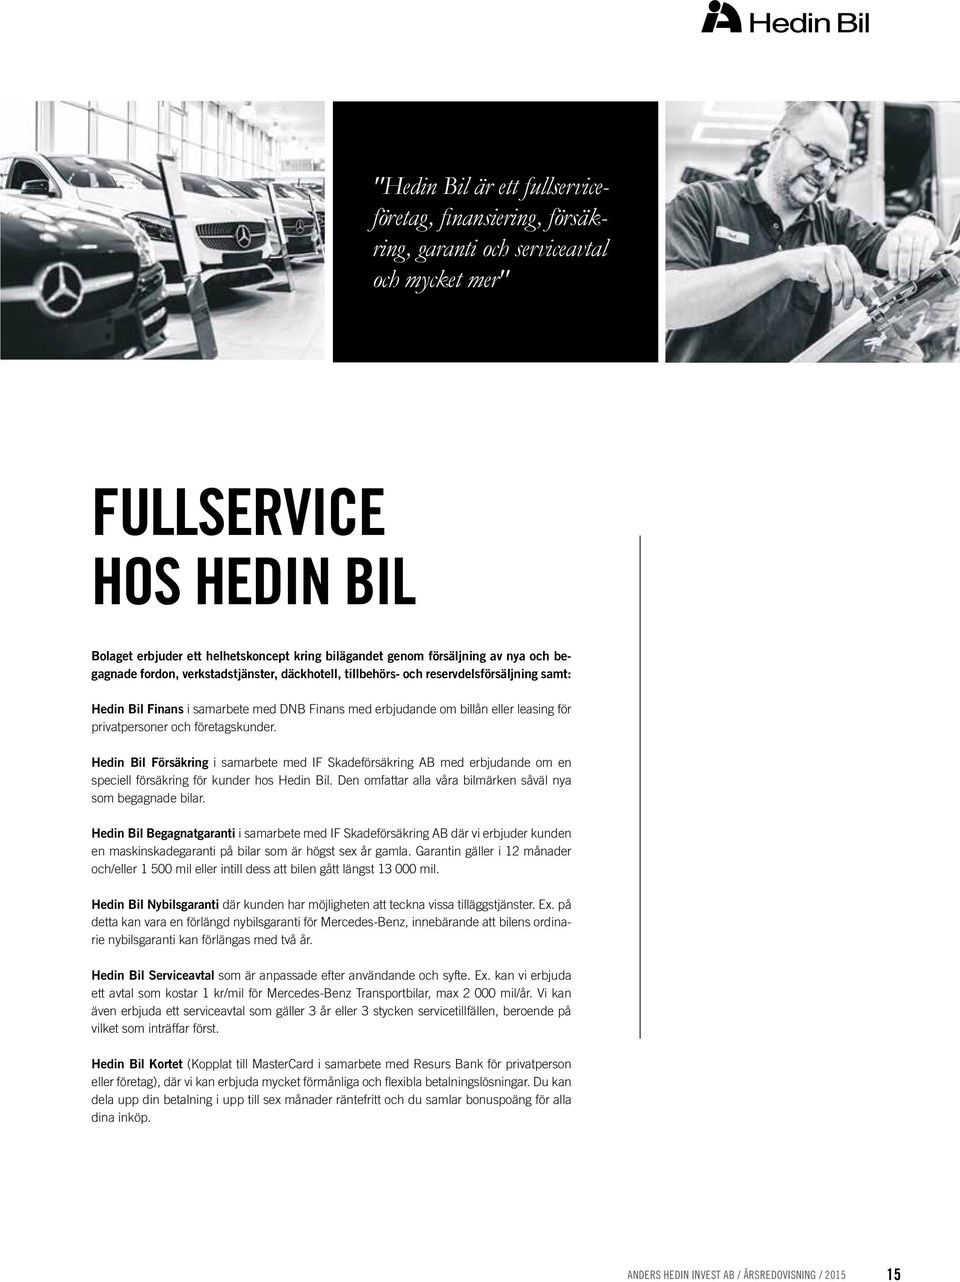 för privatpersoner och företagskunder. Hedin Bil Försäkring i samarbete med IF Skadeförsäkring AB med erbjudande om en speciell försäkring för kunder hos Hedin Bil.